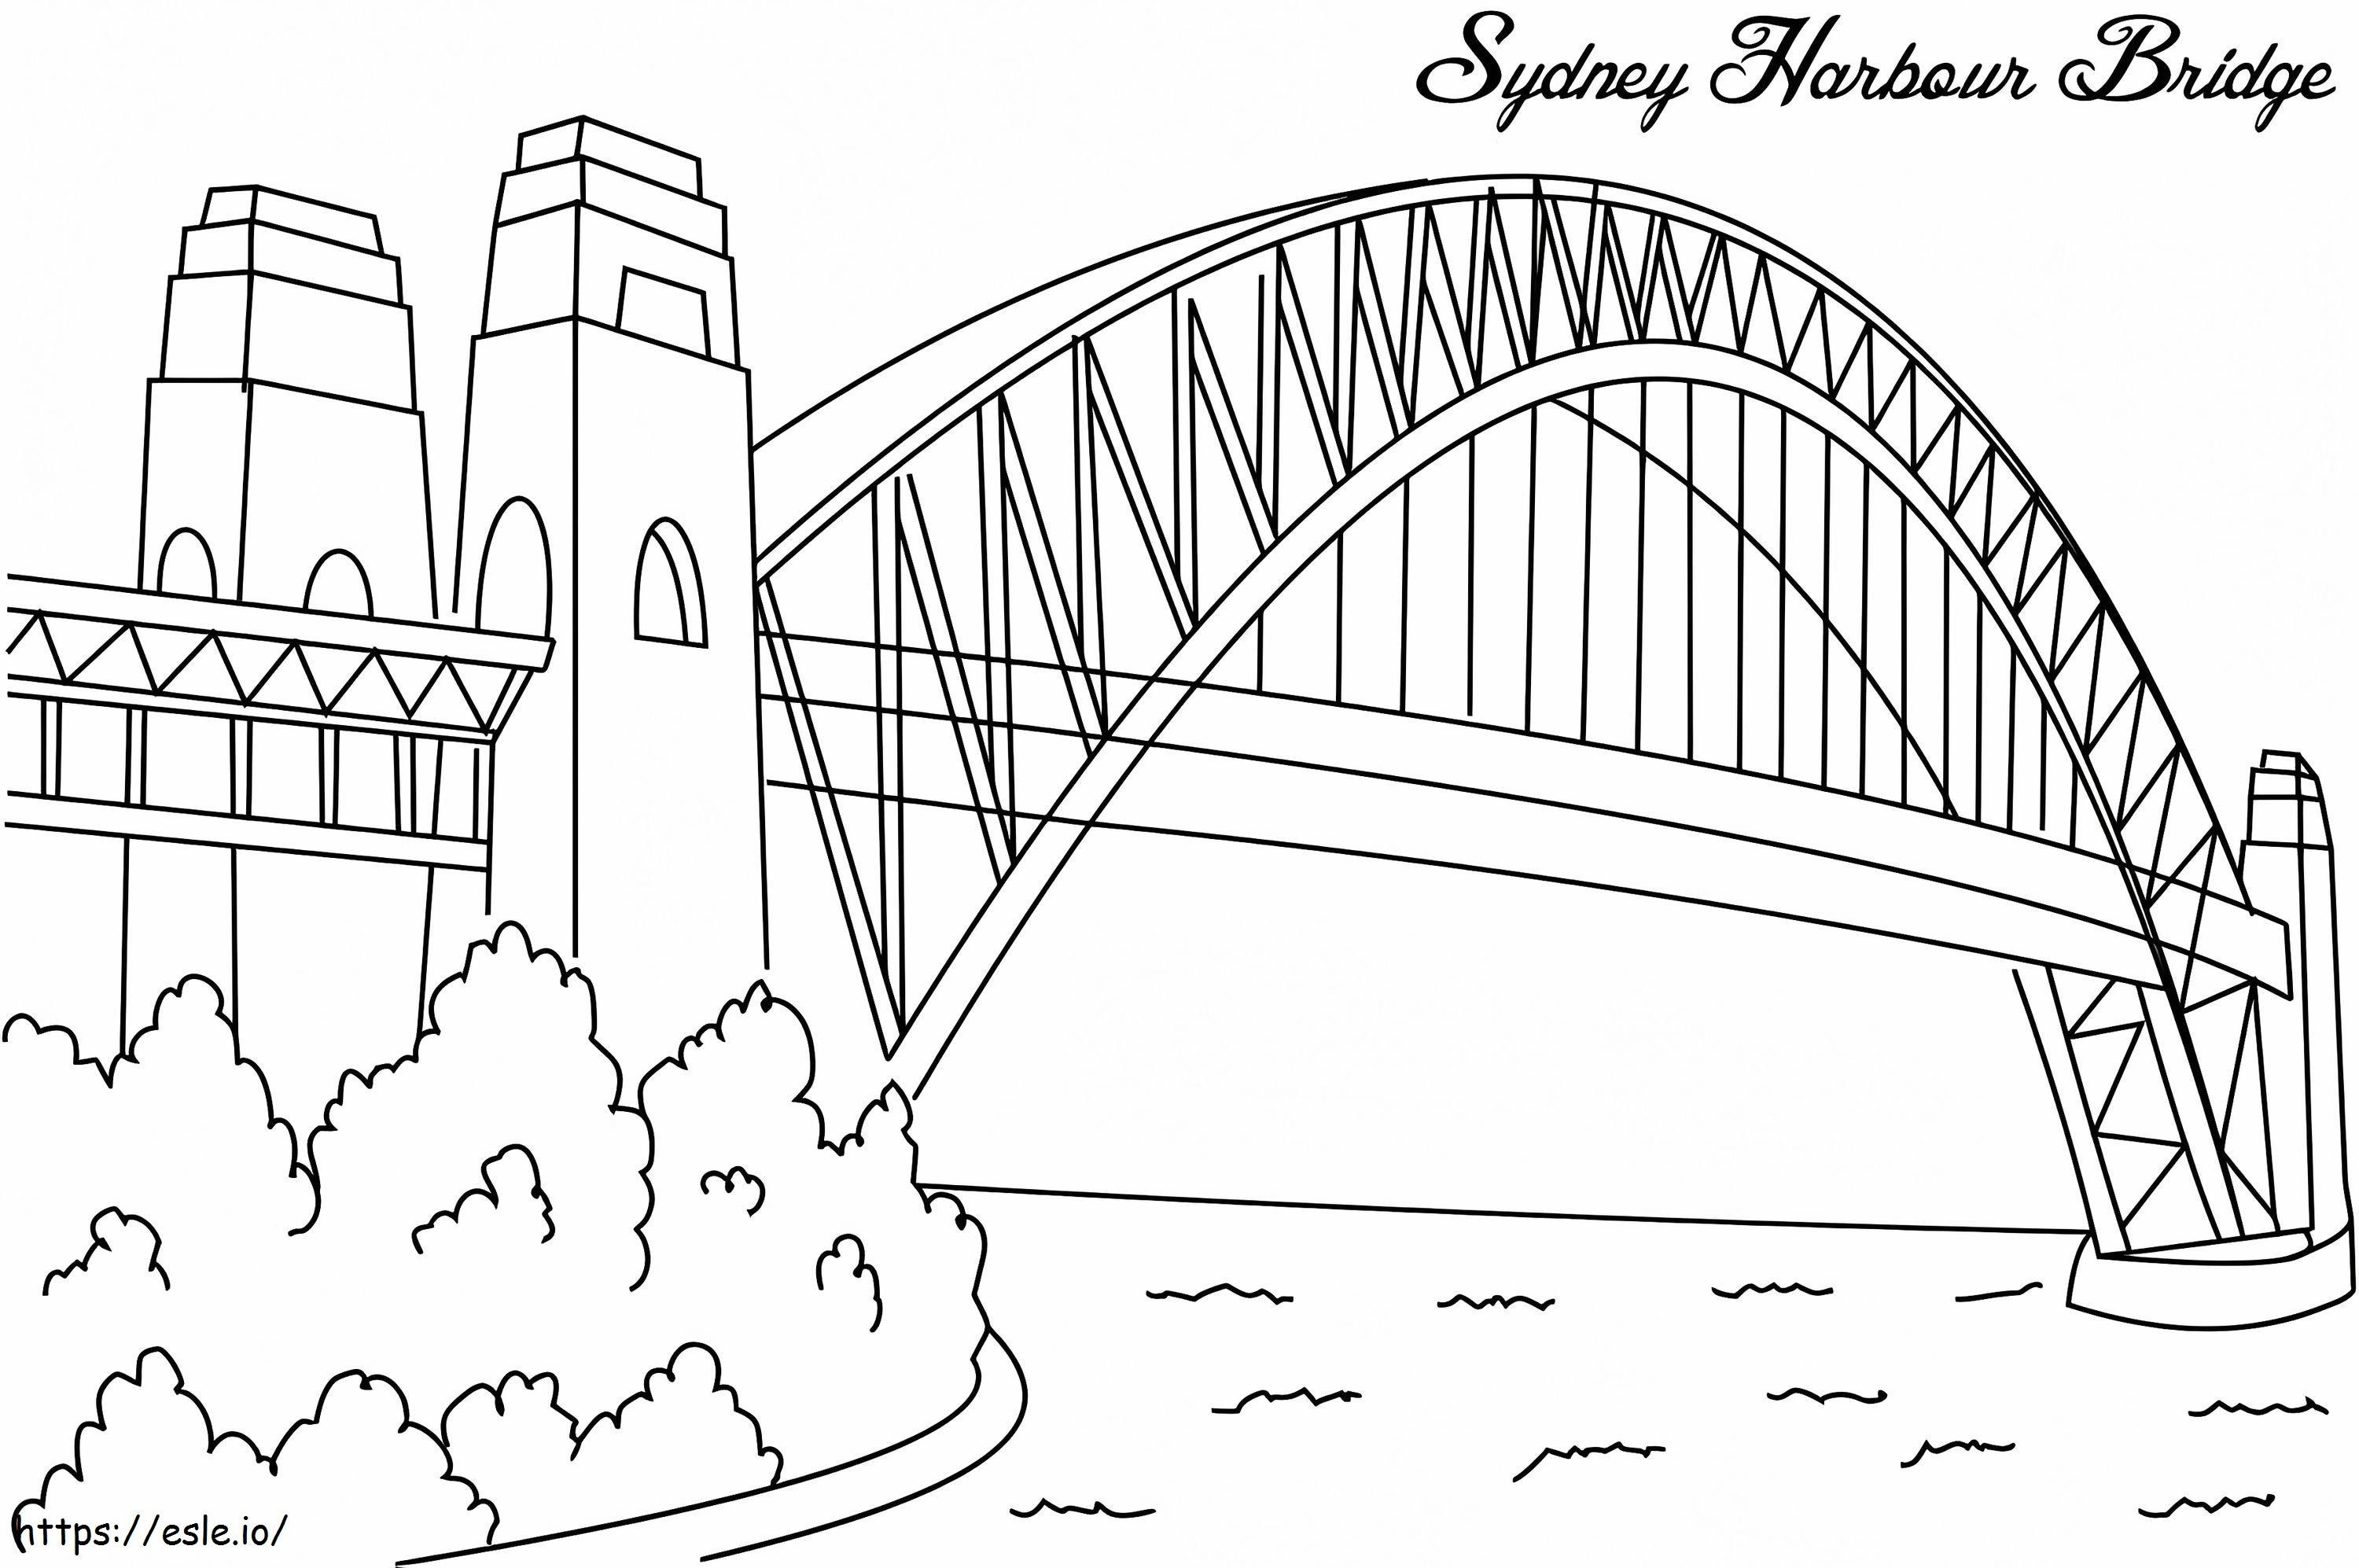  Sidney Liman Köprüsü A4 boyama